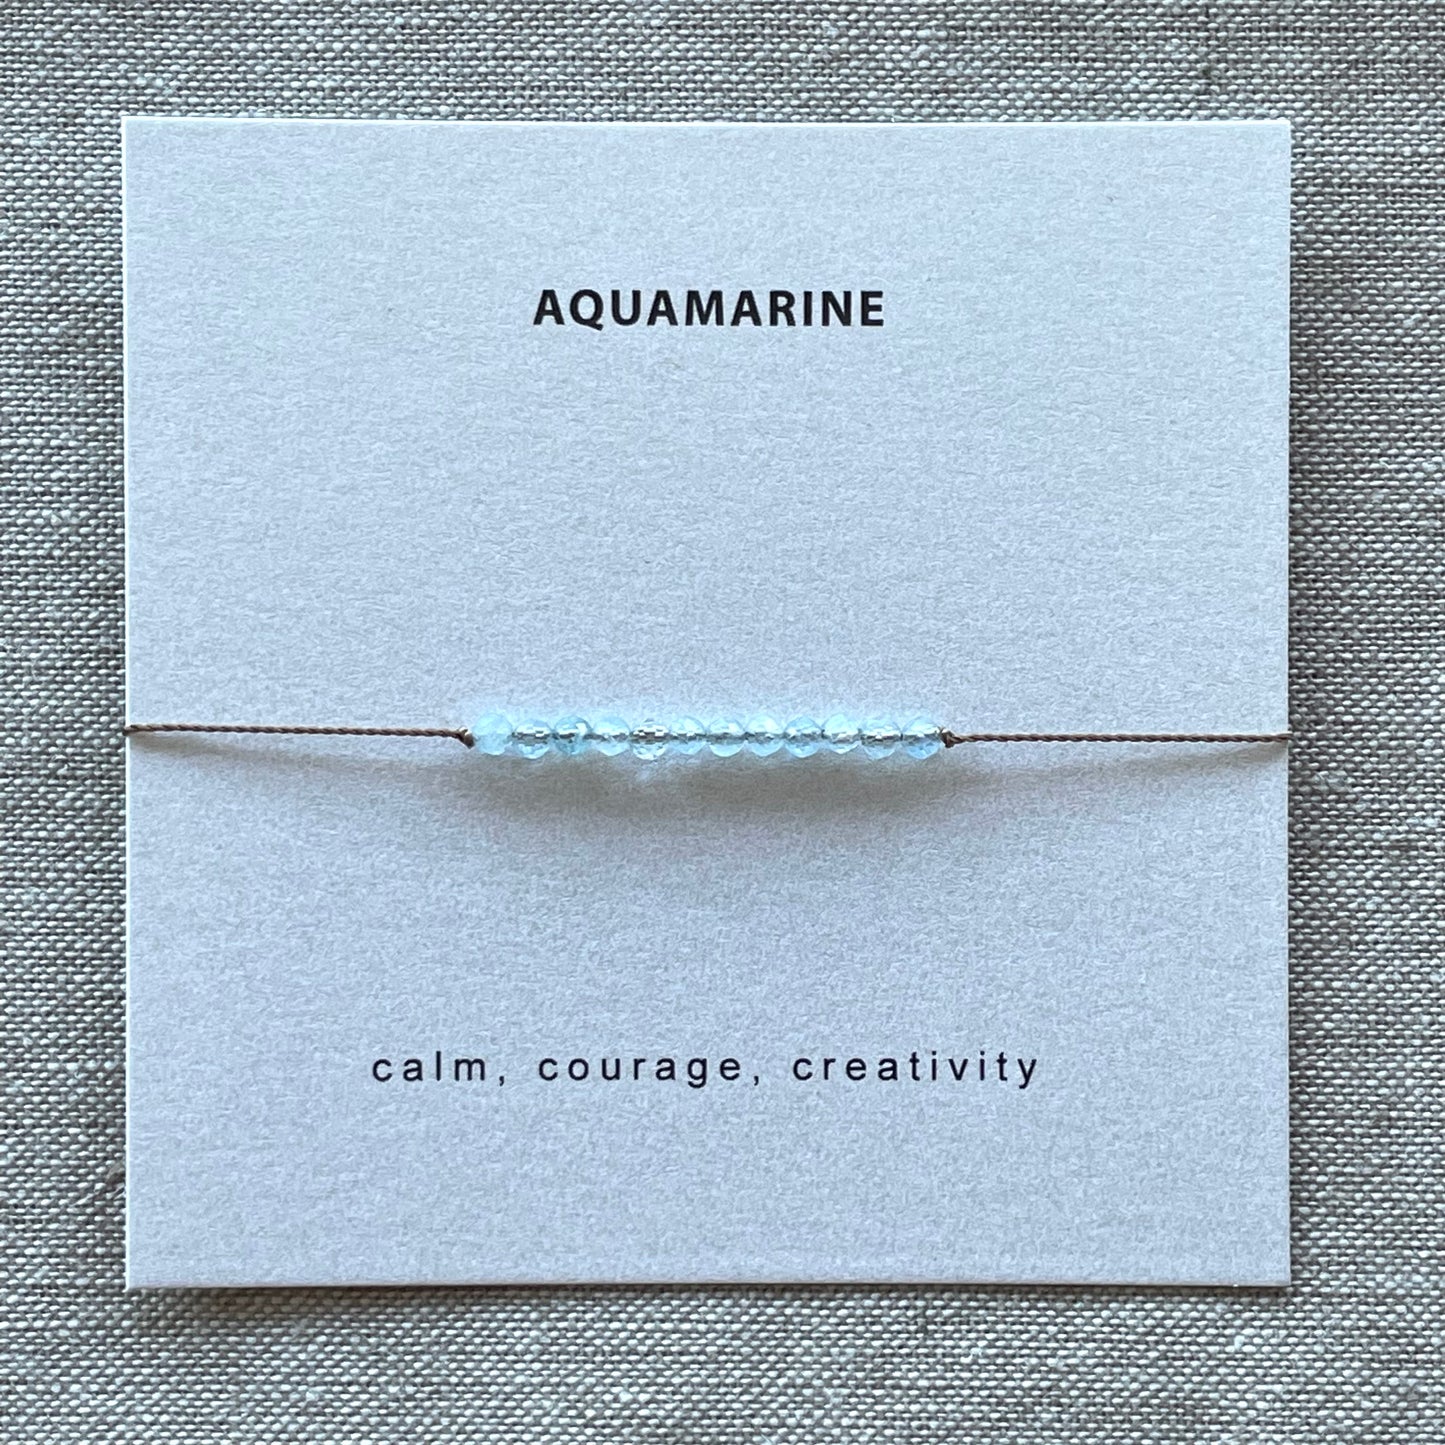 Aquamarine Bracelet- Courage